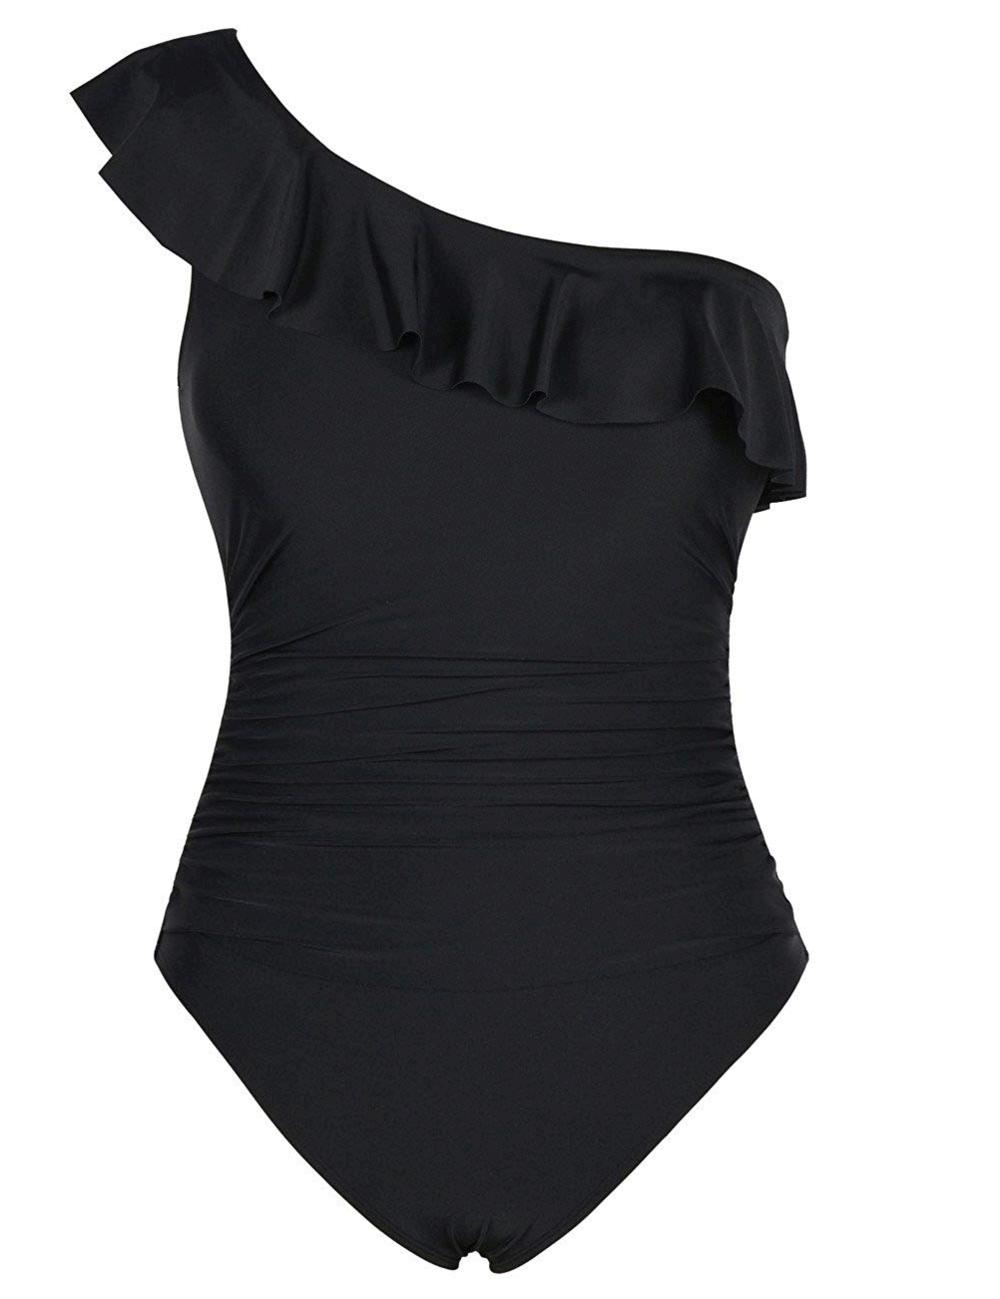 Hilor Women's One Piece Swimsuits One Shoulder Swimwear, Black, Size 12 ...